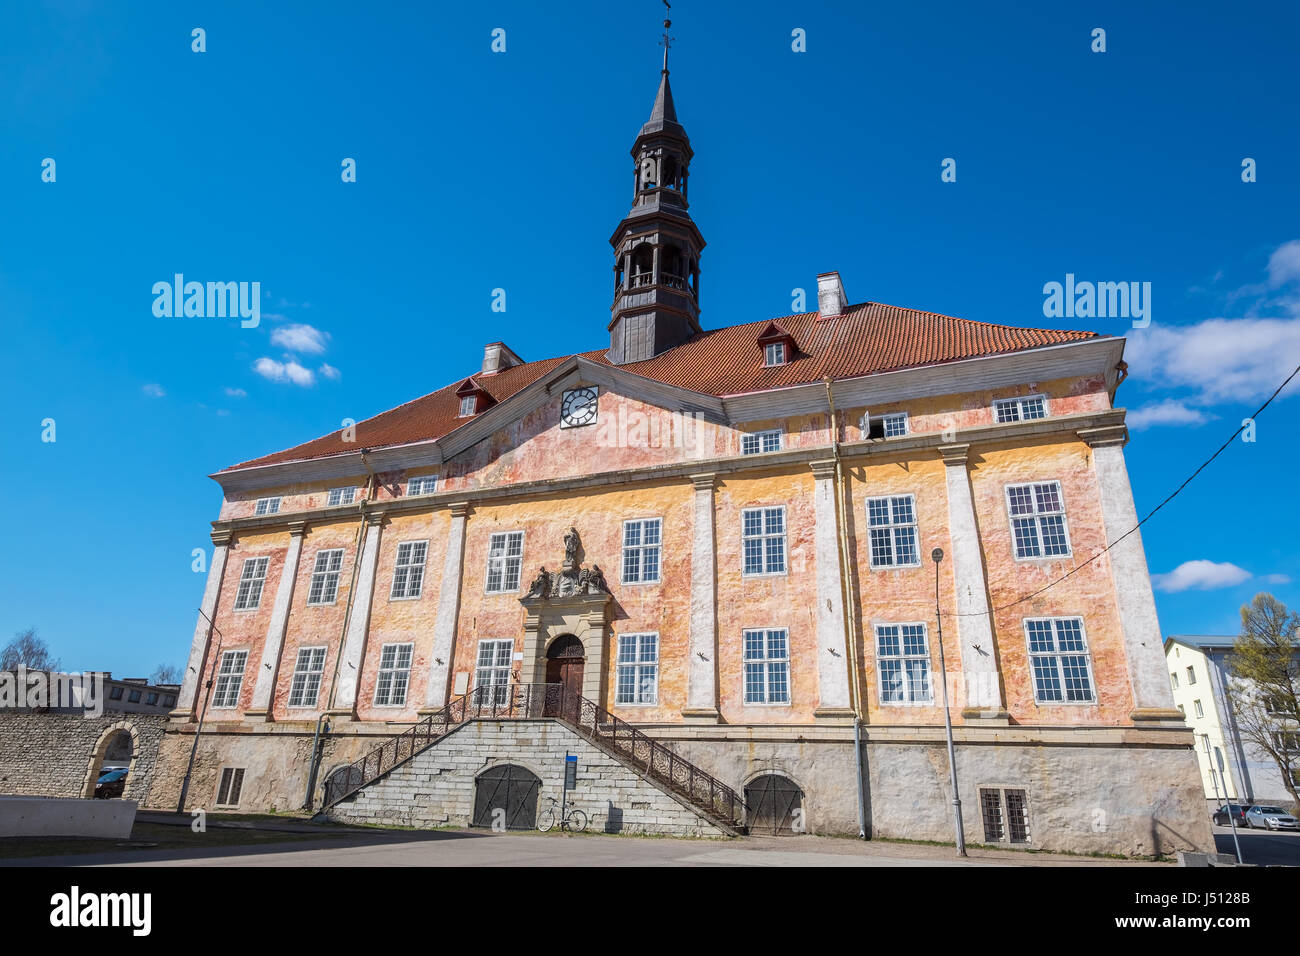 Vue de la vieille ville de Hall Building à Narva. Comté d'Ida-Viru, est de l'Estonie, Europe Banque D'Images